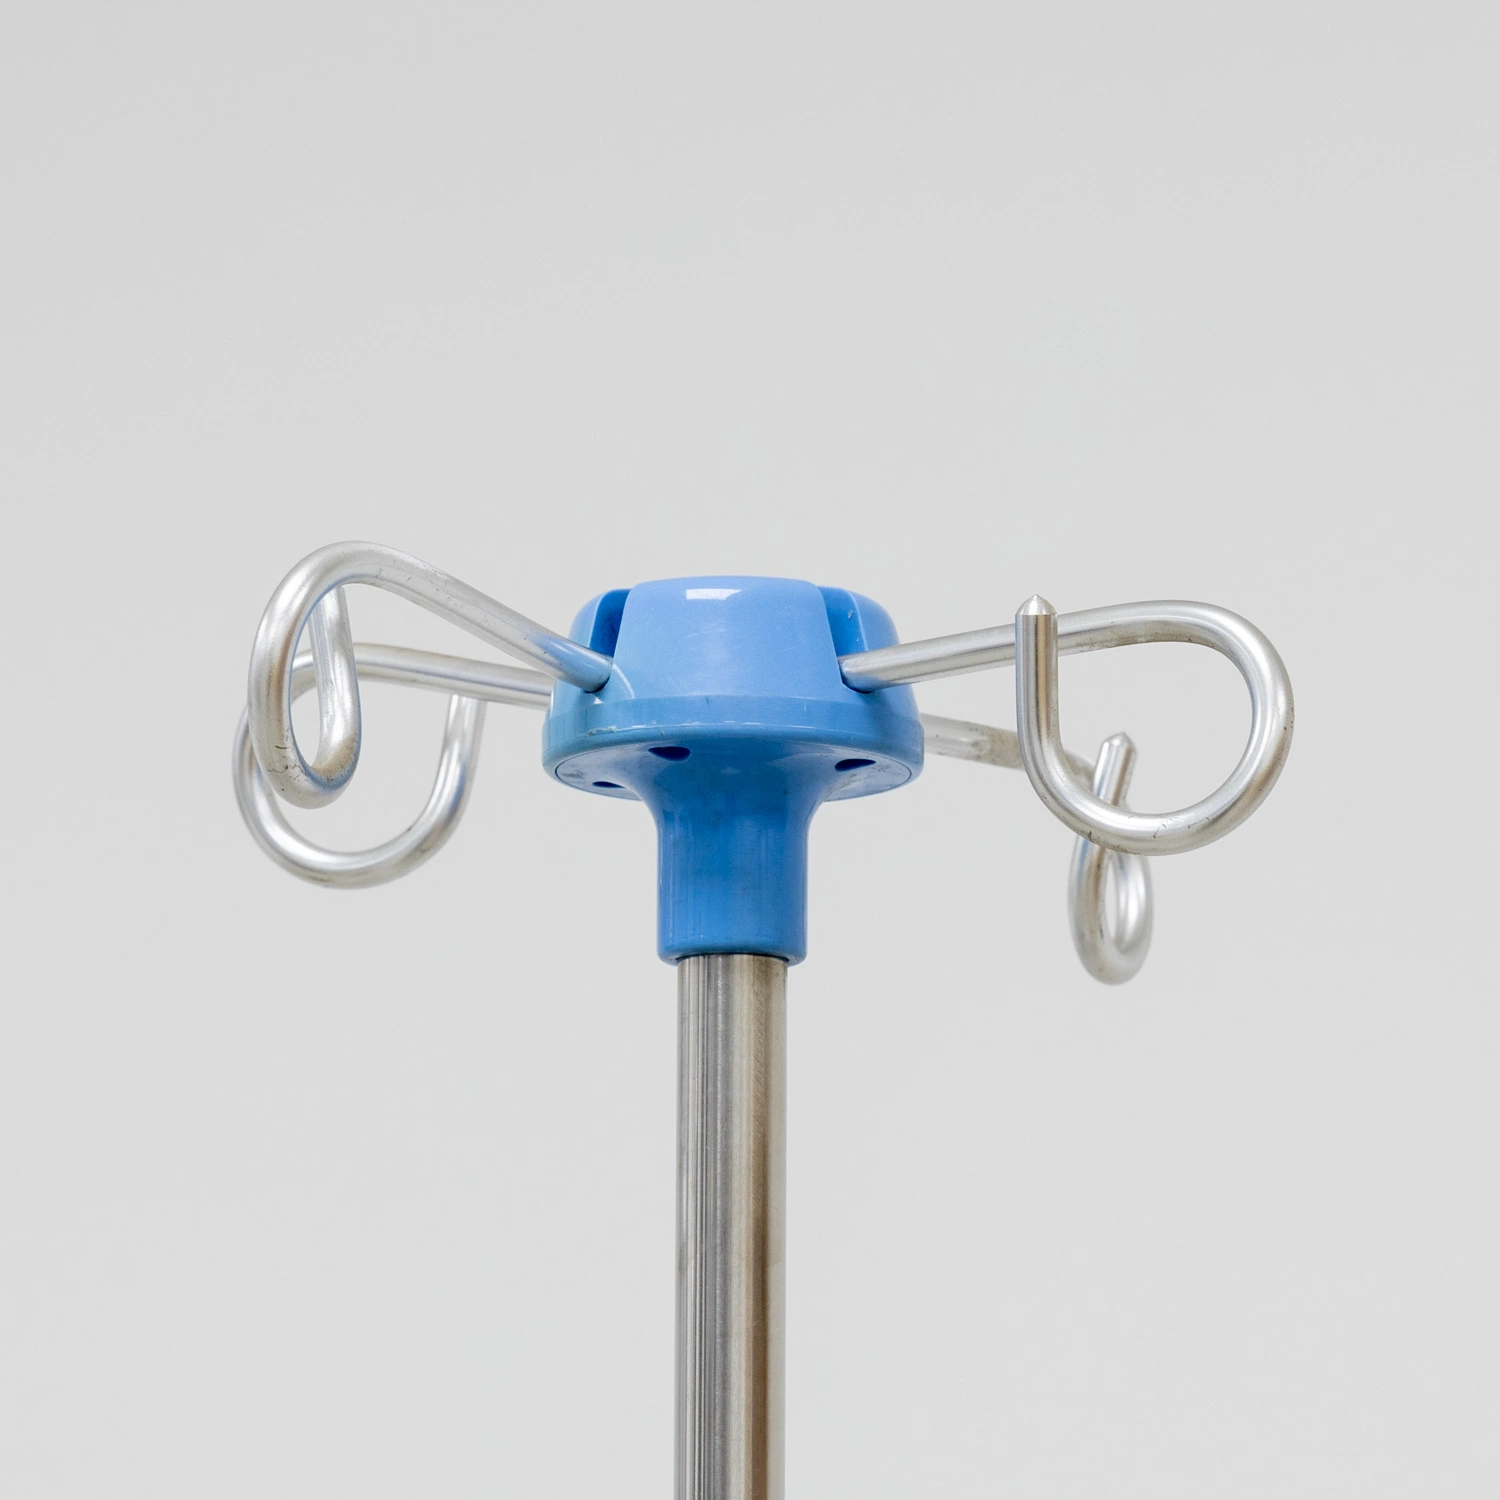 Poste de gotejamento móvel para perfusão intravenosa hospitalar Aço inoxidável